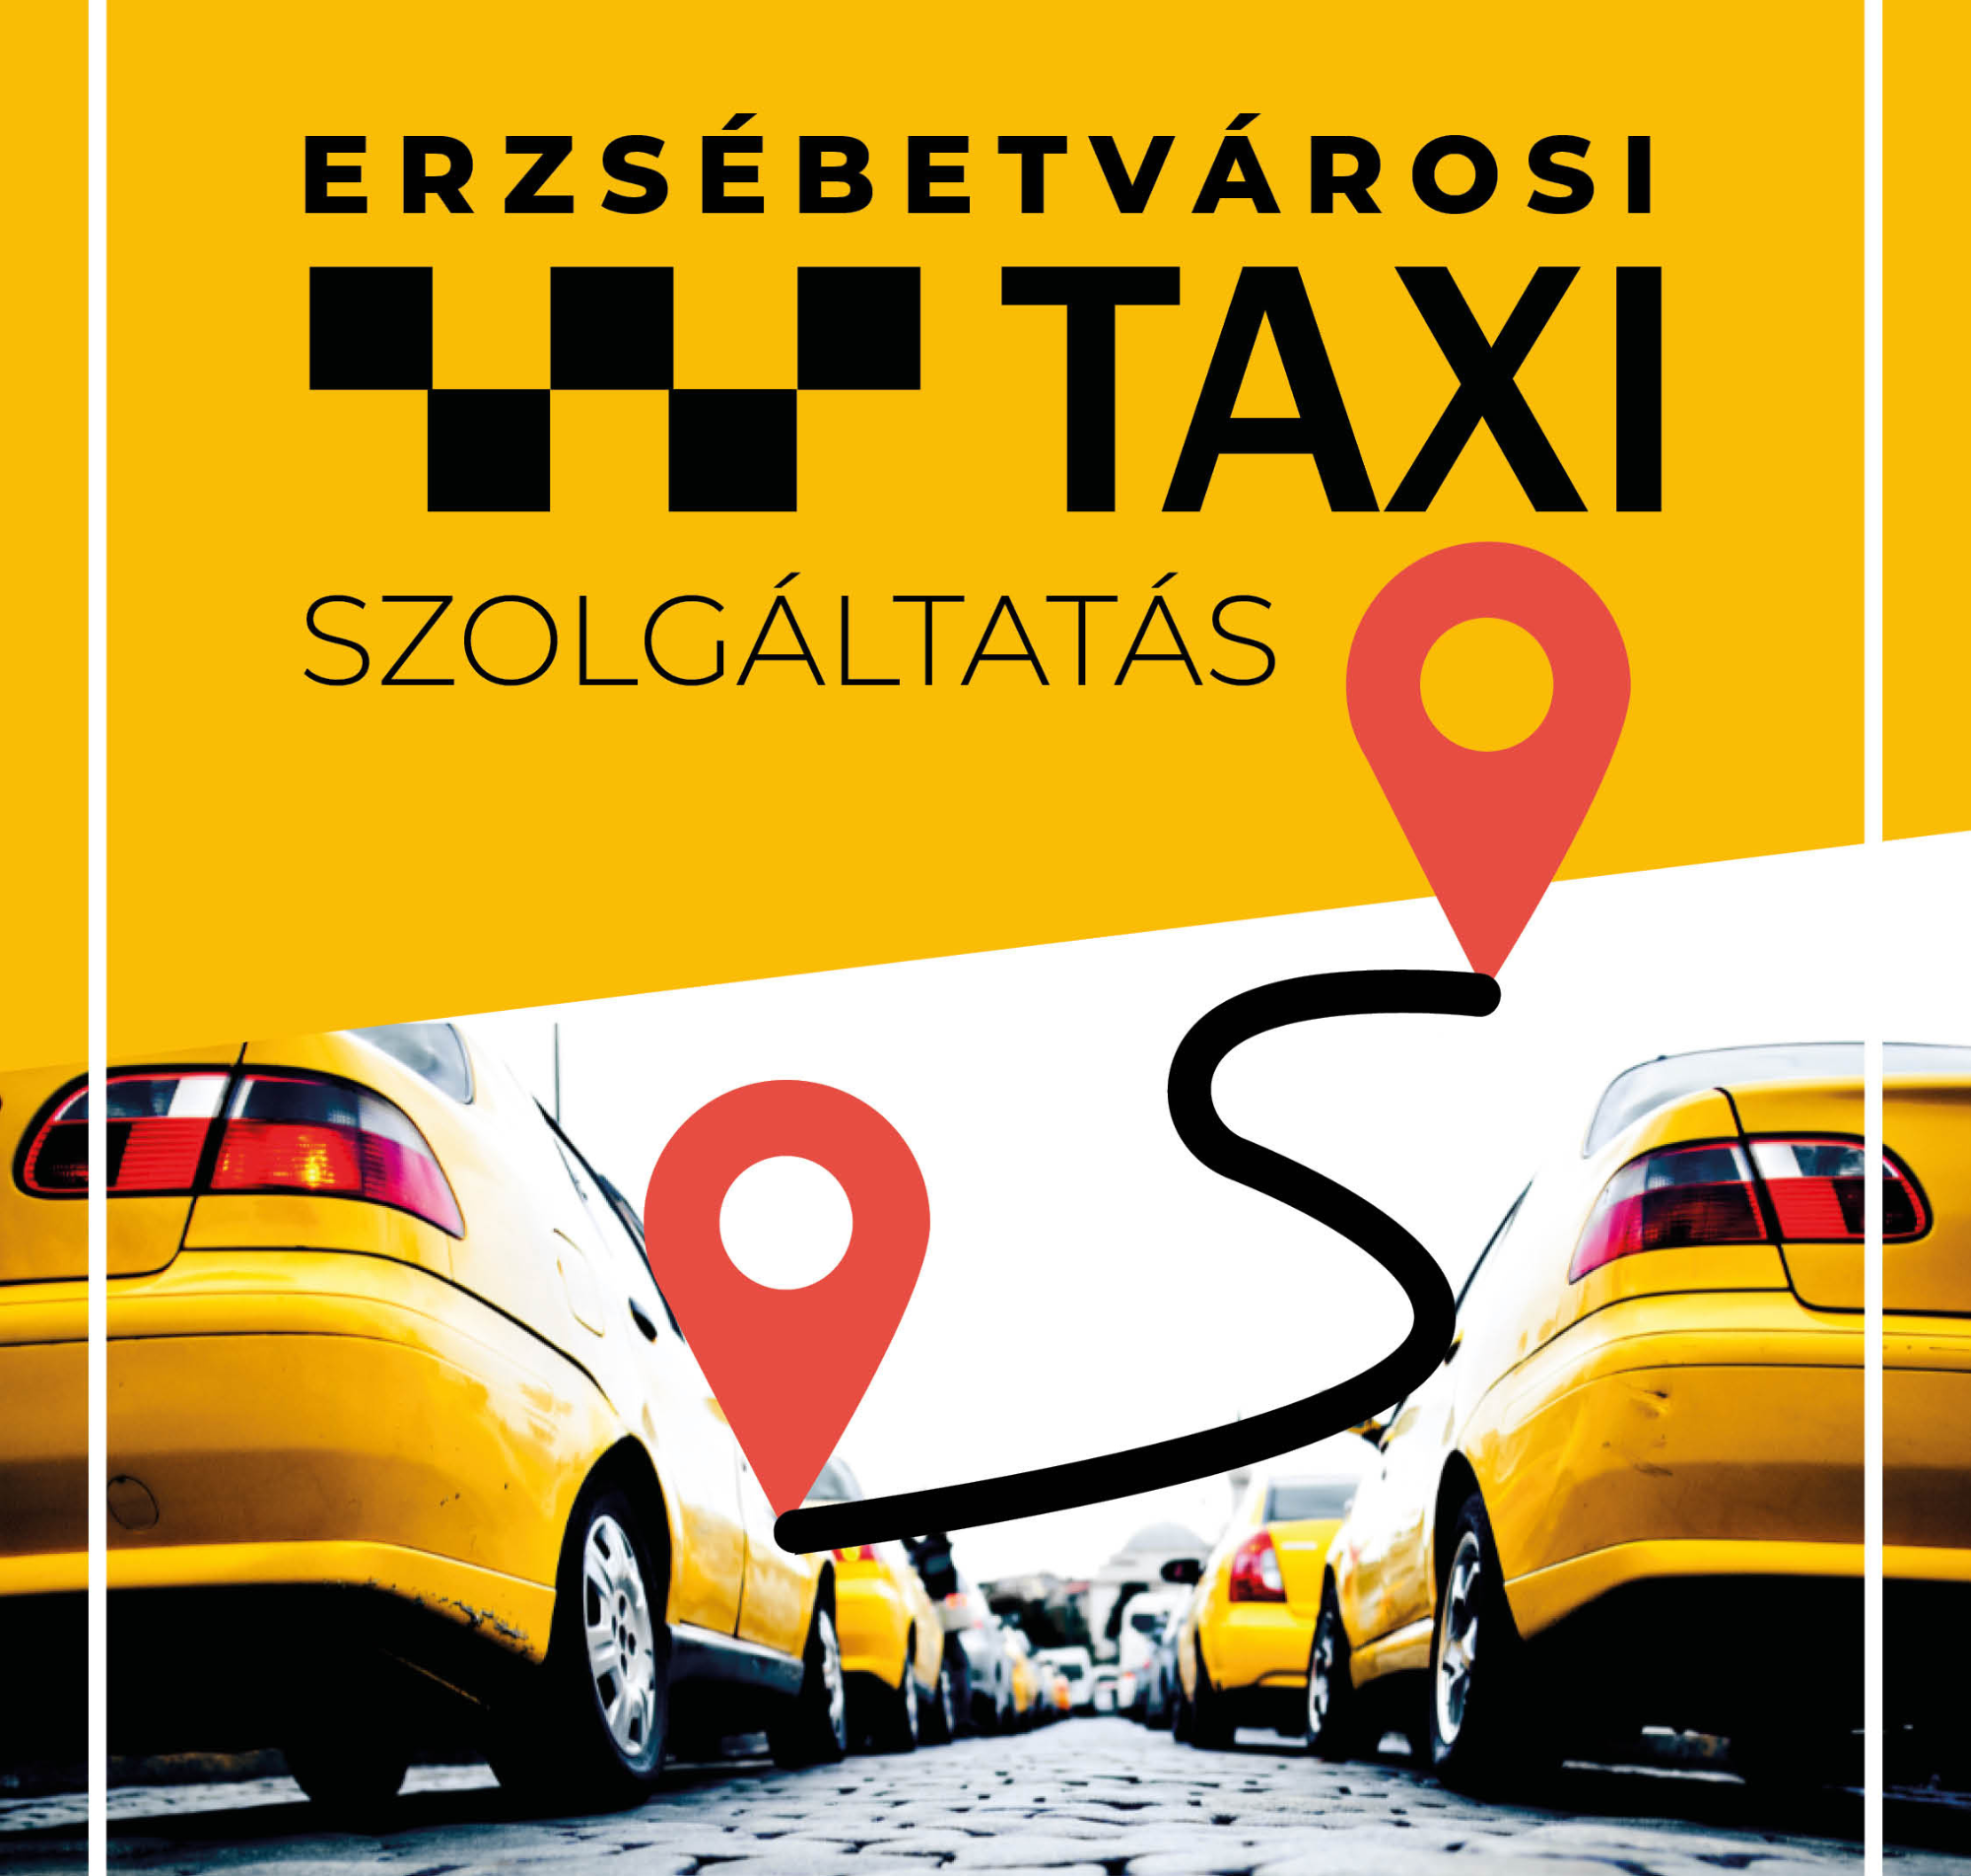 Erzsébetvárosi taxi szolgáltatás